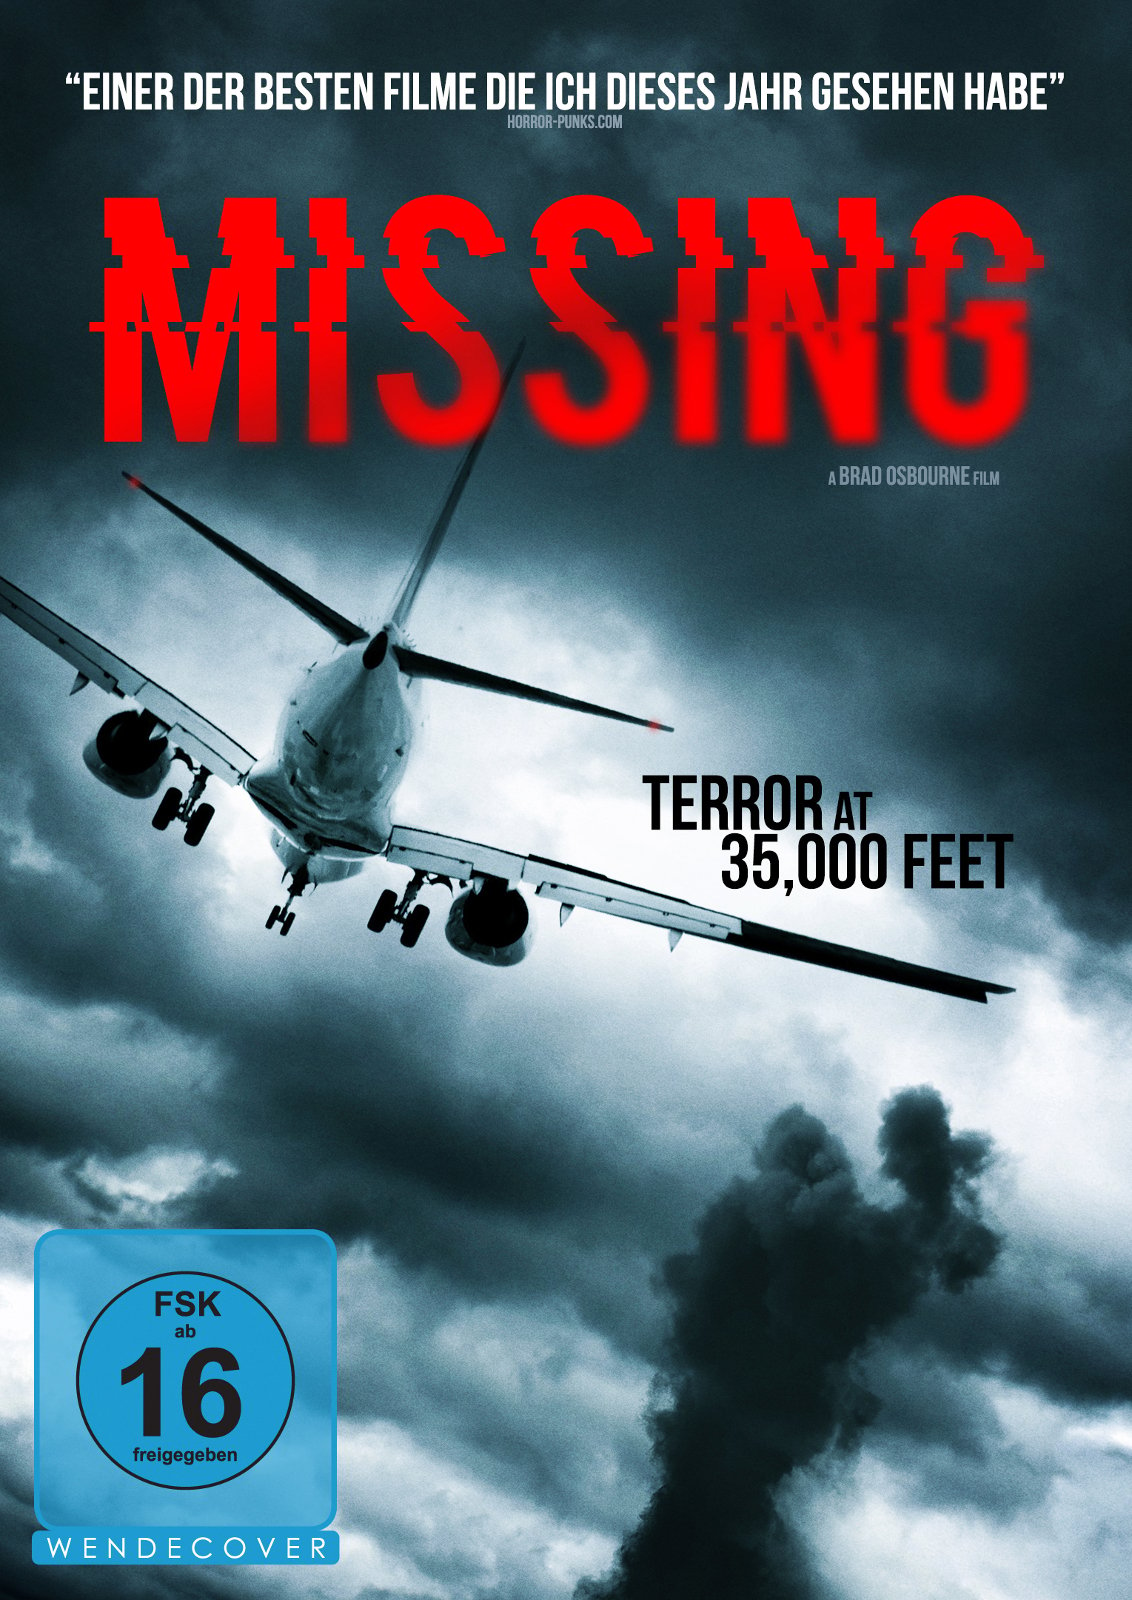 Missing Film 2013 FILMSTARTS.de